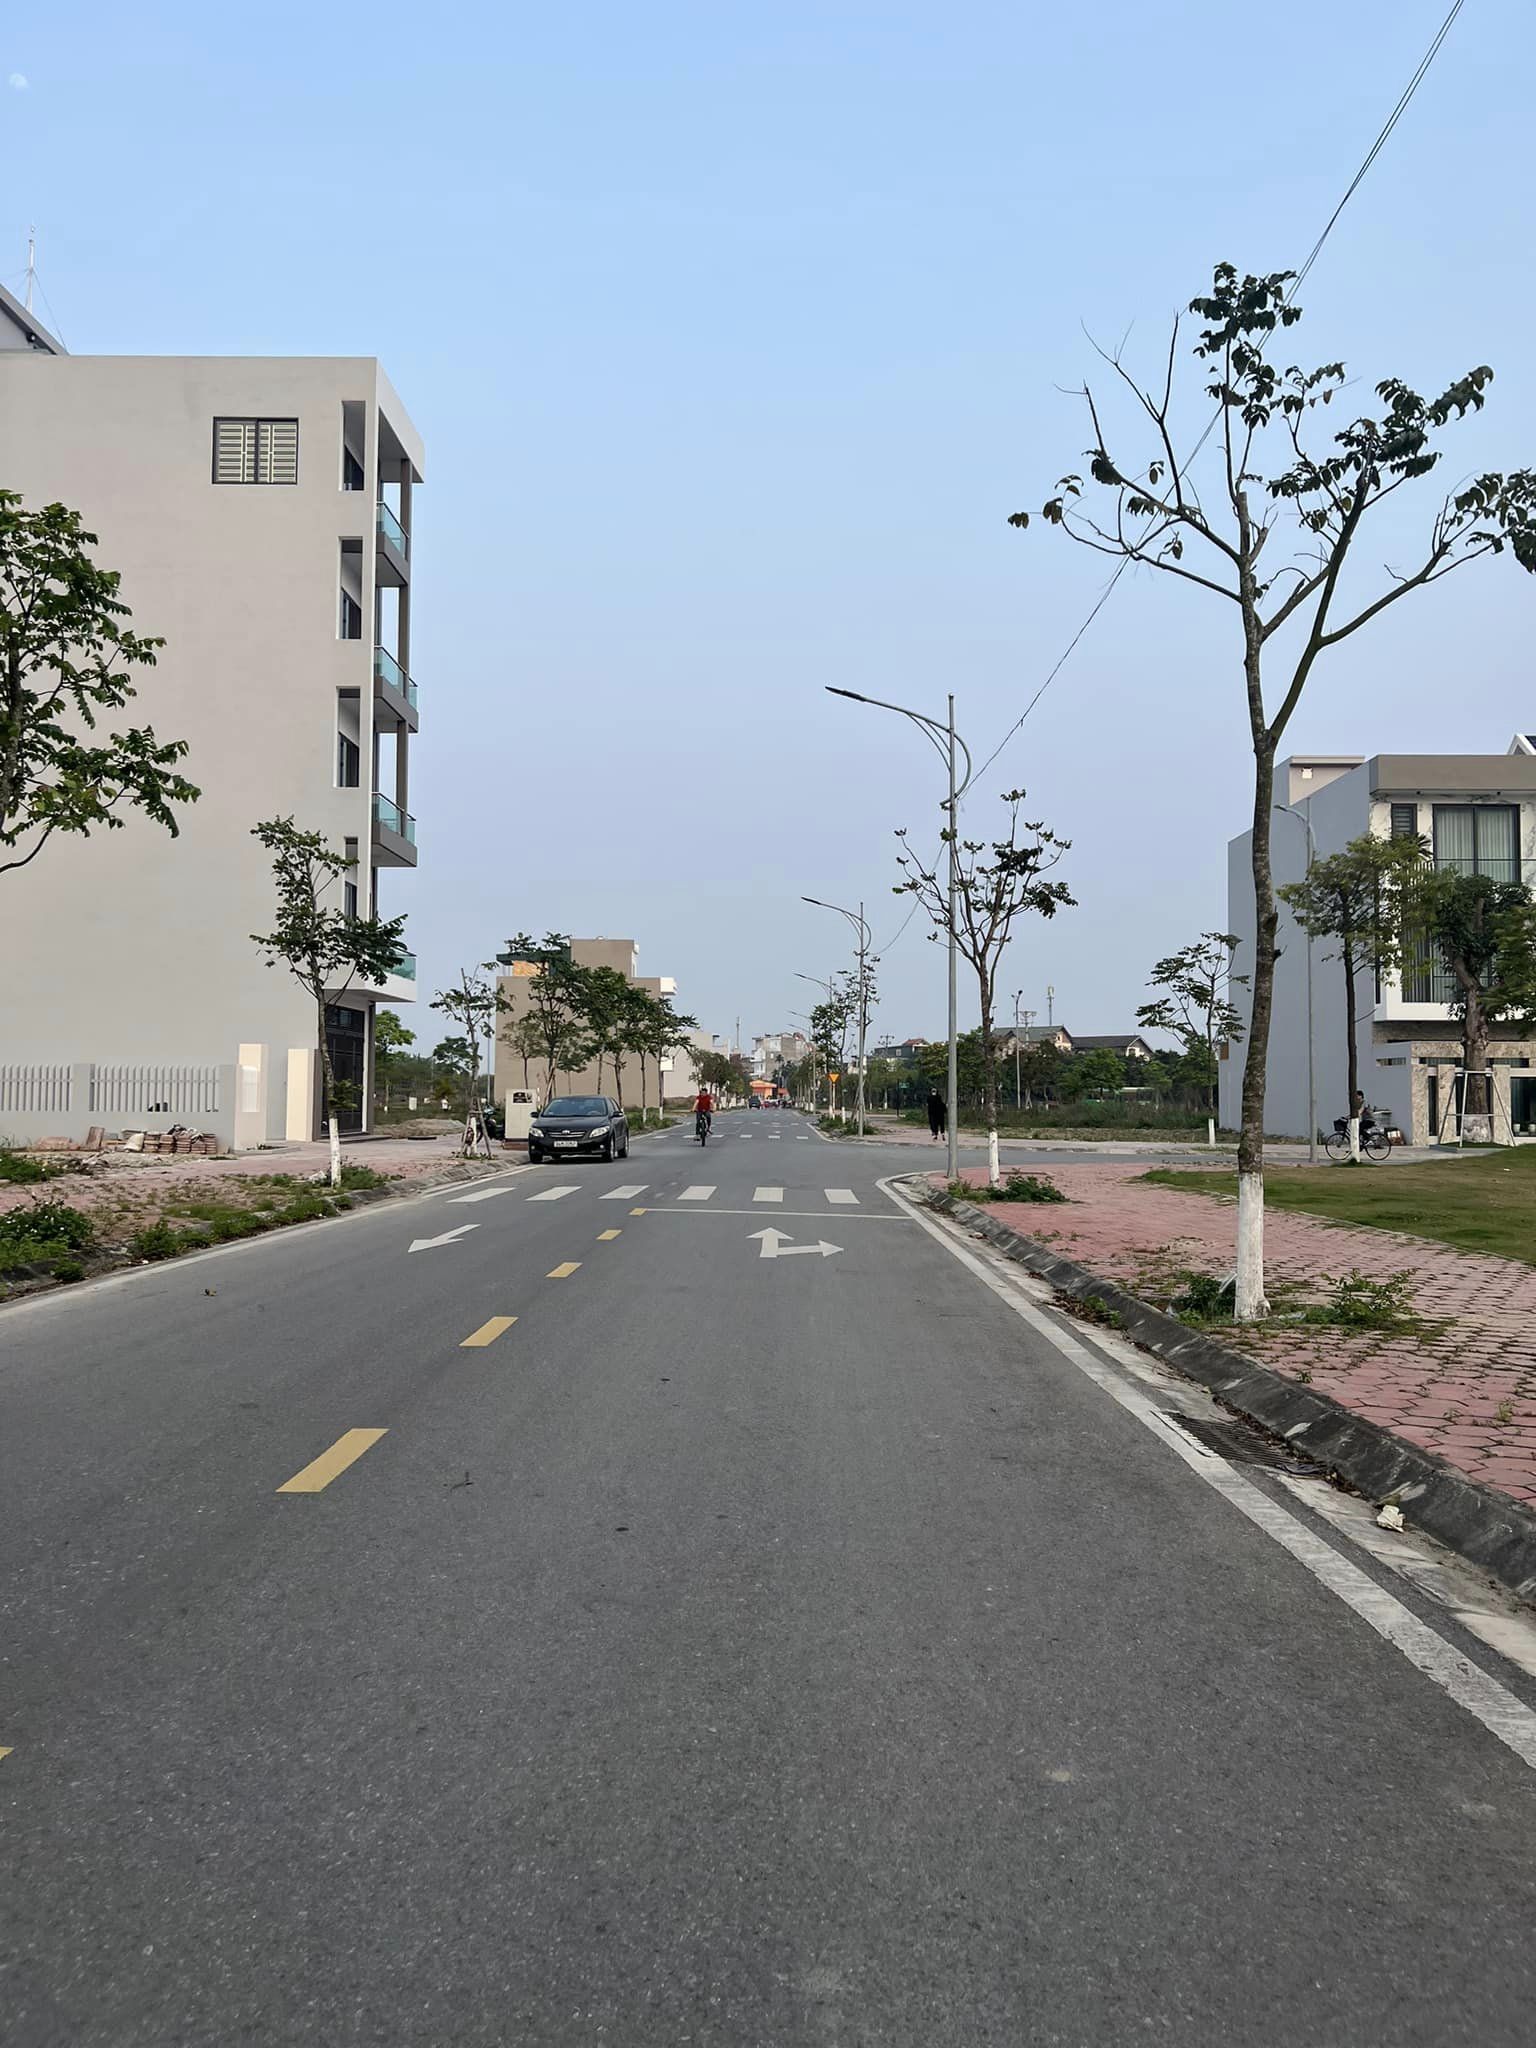 Bán đất KDC Trần Hưng Đạo hướng Nam, đường trục chính 17.5m, sổ hồng, giá rất hợp lý